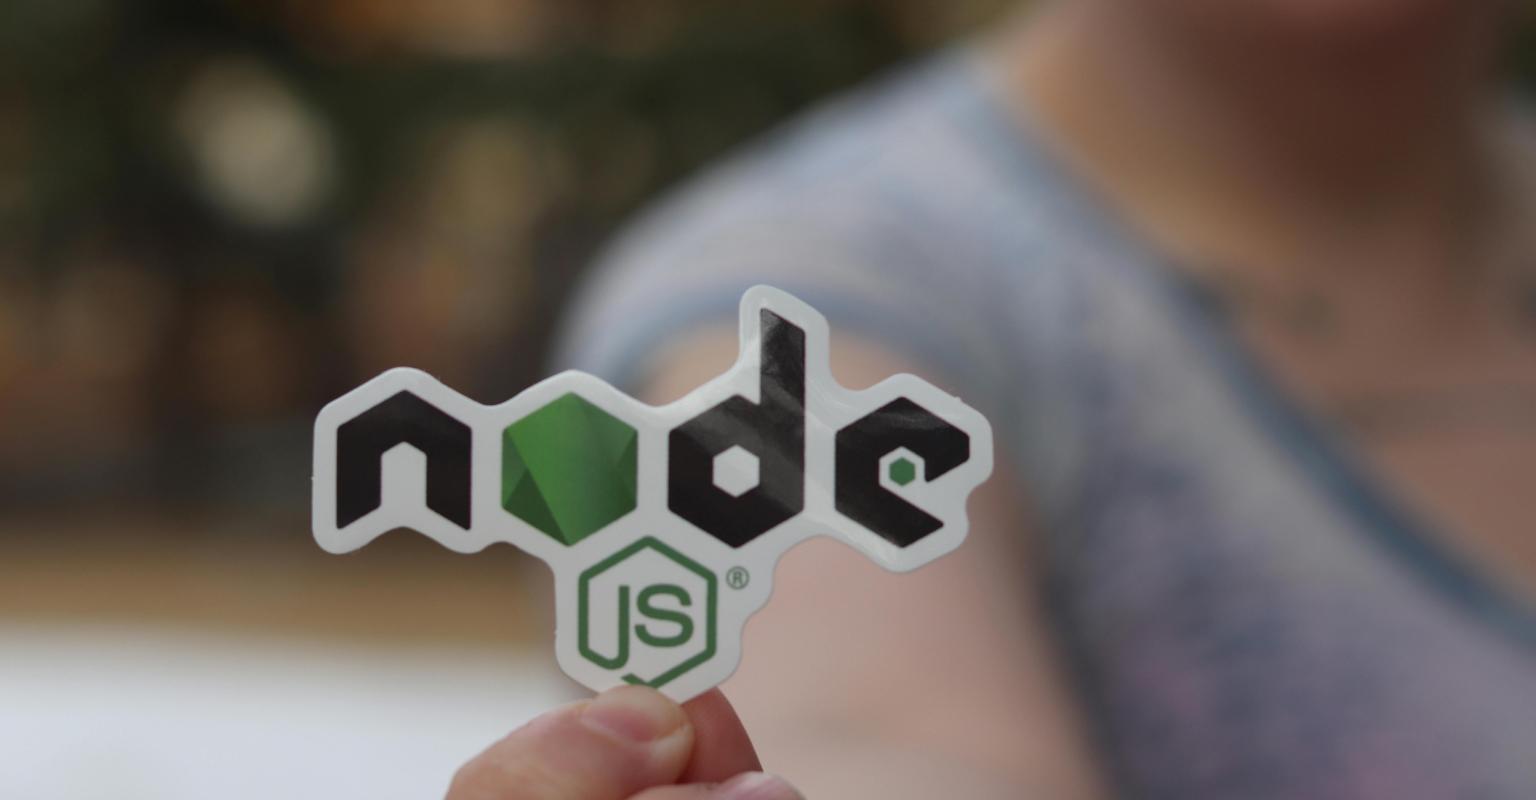 hand holding up a sticker that reads 'node js